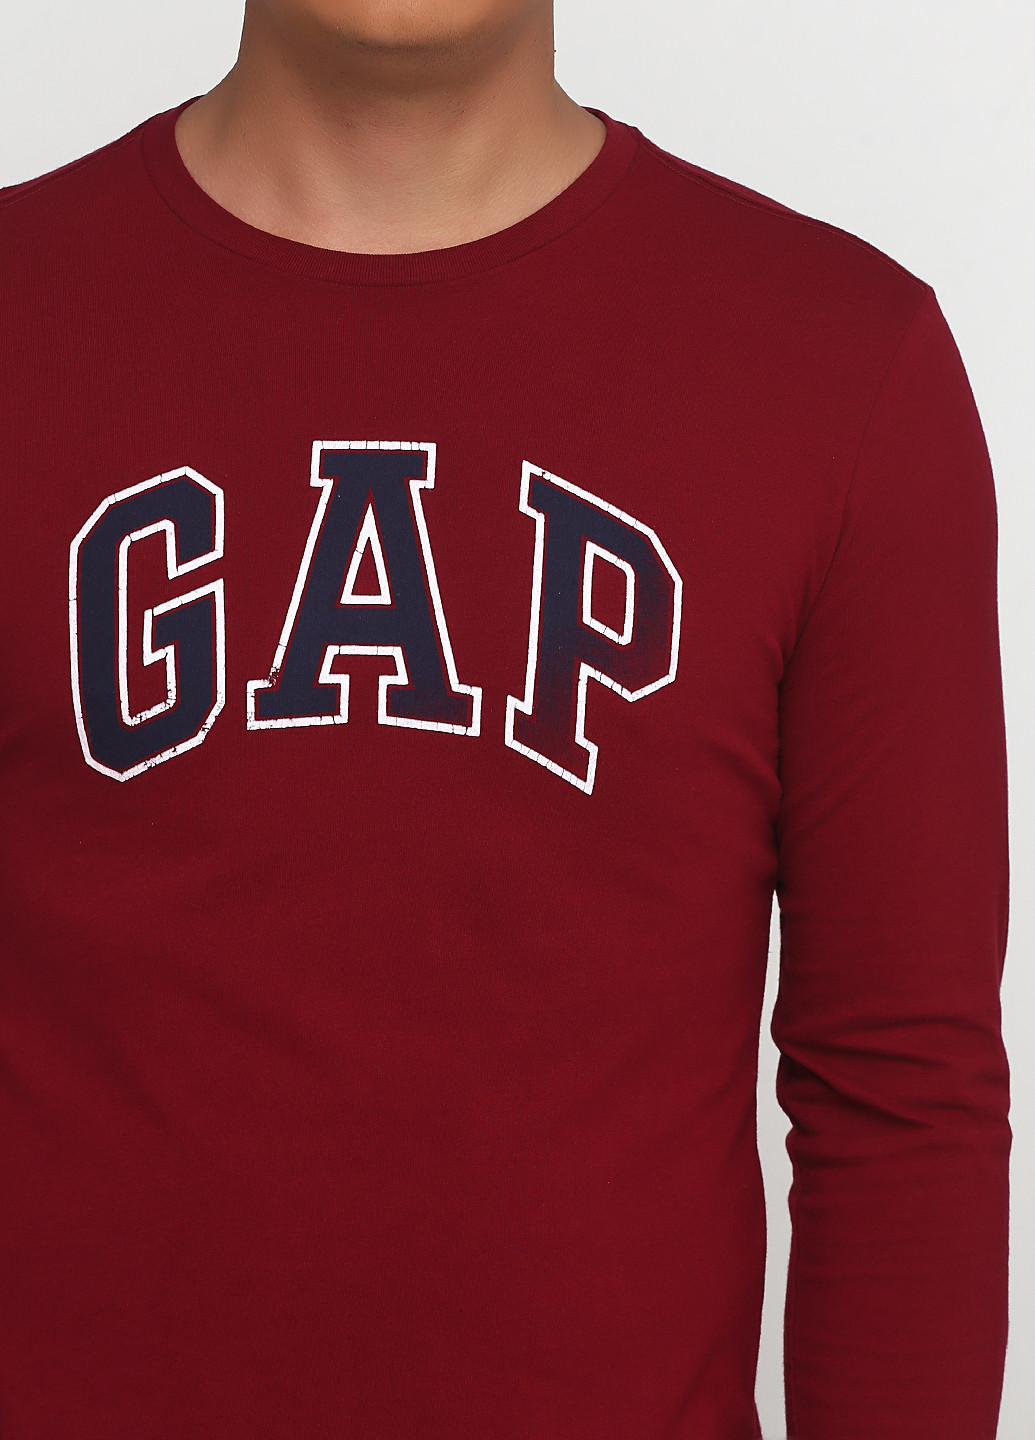 Лонгслів Gap логотип бордовий кежуали бавовна, трикотаж